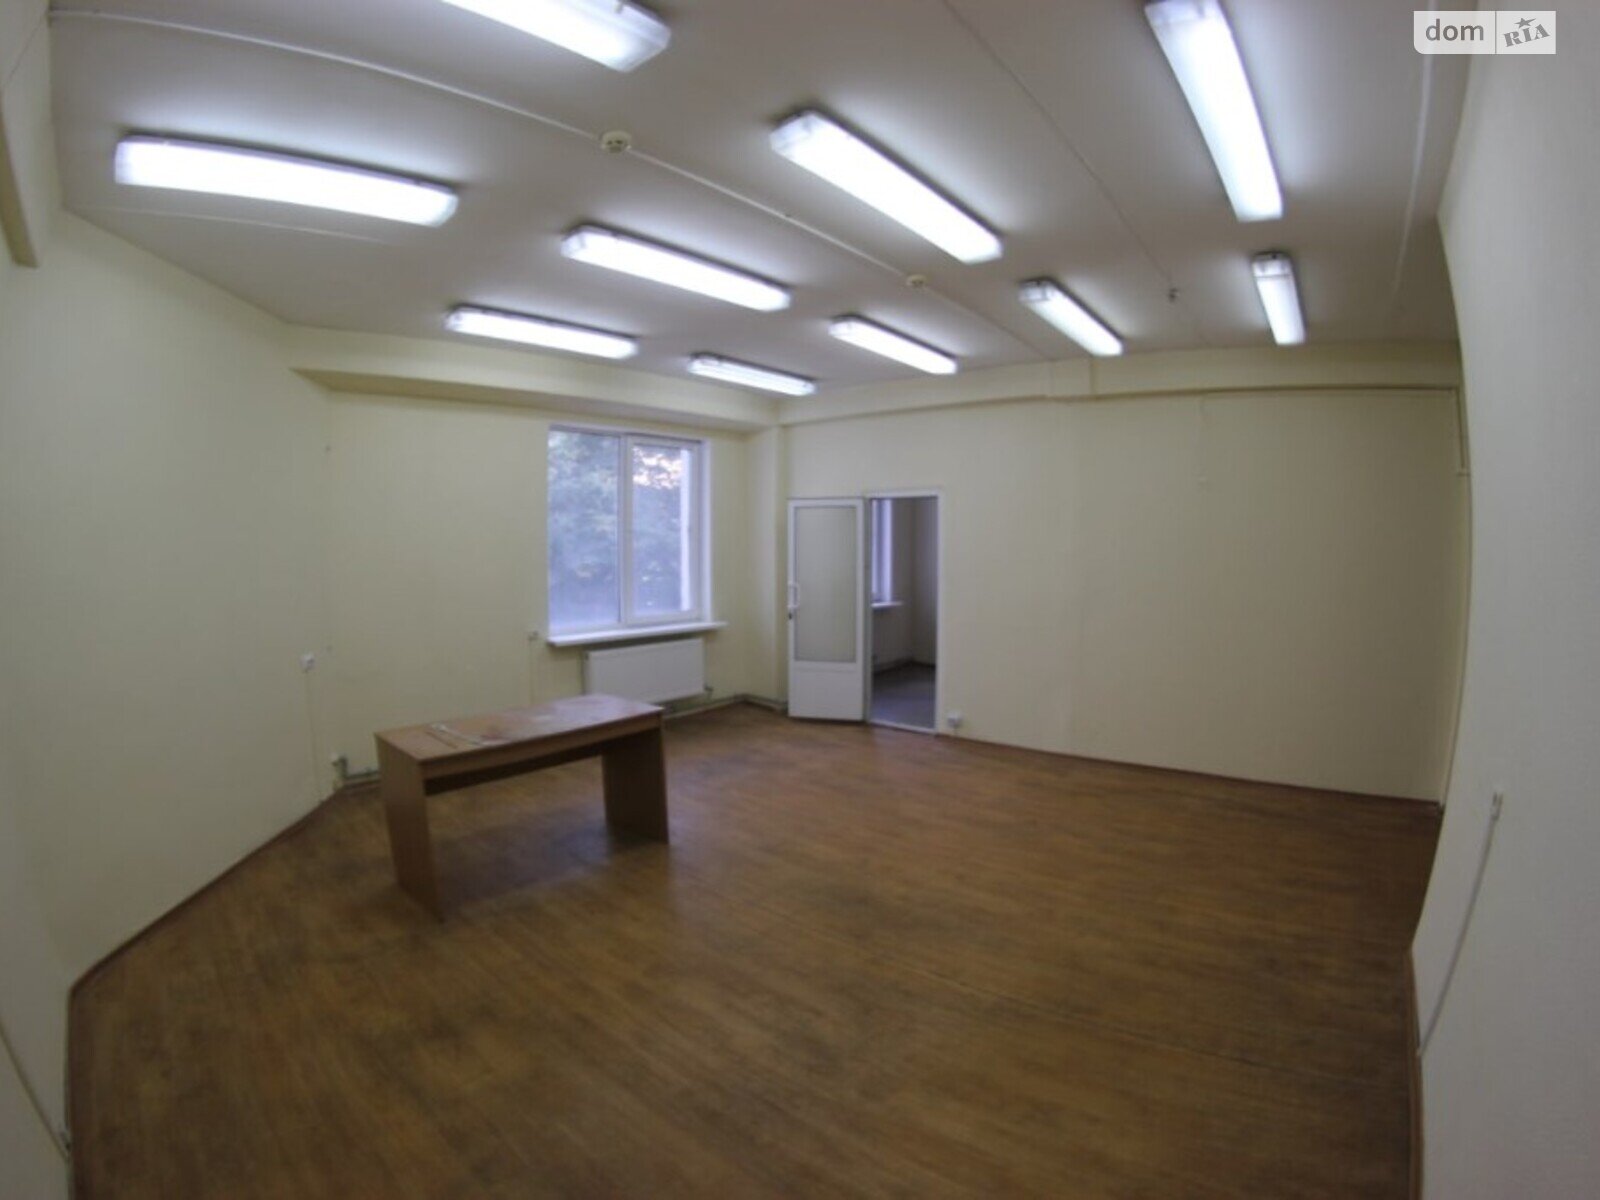 Аренда офисного помещения в Днепре, Ольги княгини улица 22, помещений - 2, этаж - 2 фото 1